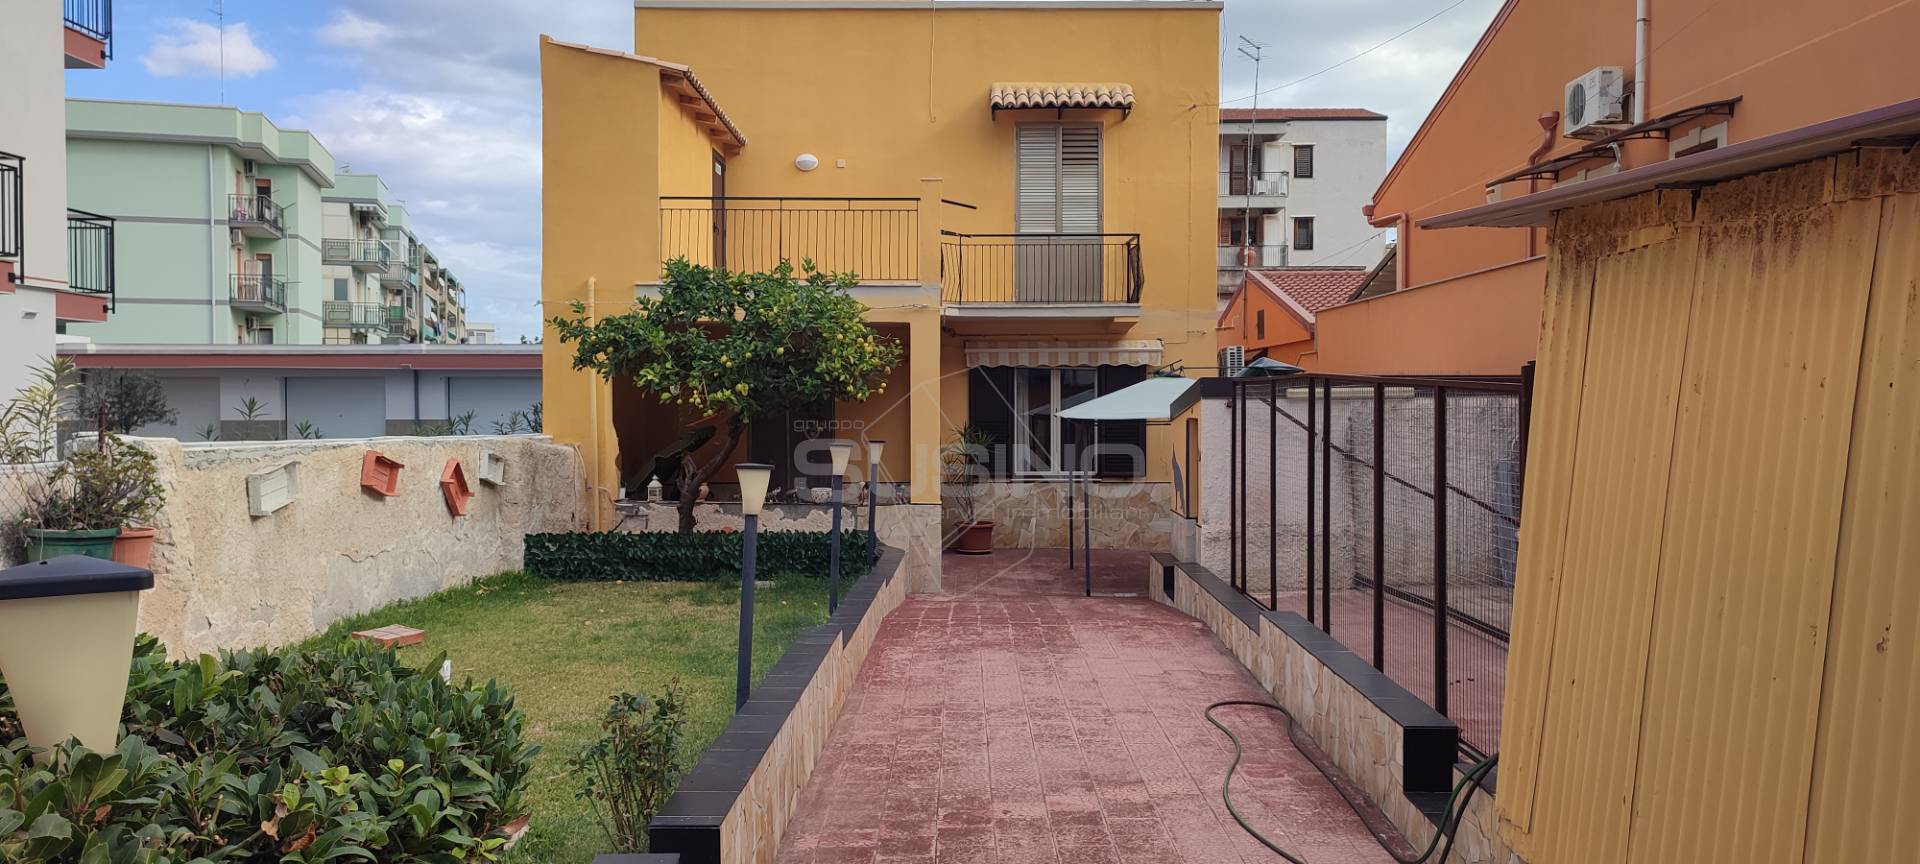 Villa Bifamiliare in vendita a Siracusa, 6 locali, zona tasanta, prezzo € 255.000 | PortaleAgenzieImmobiliari.it